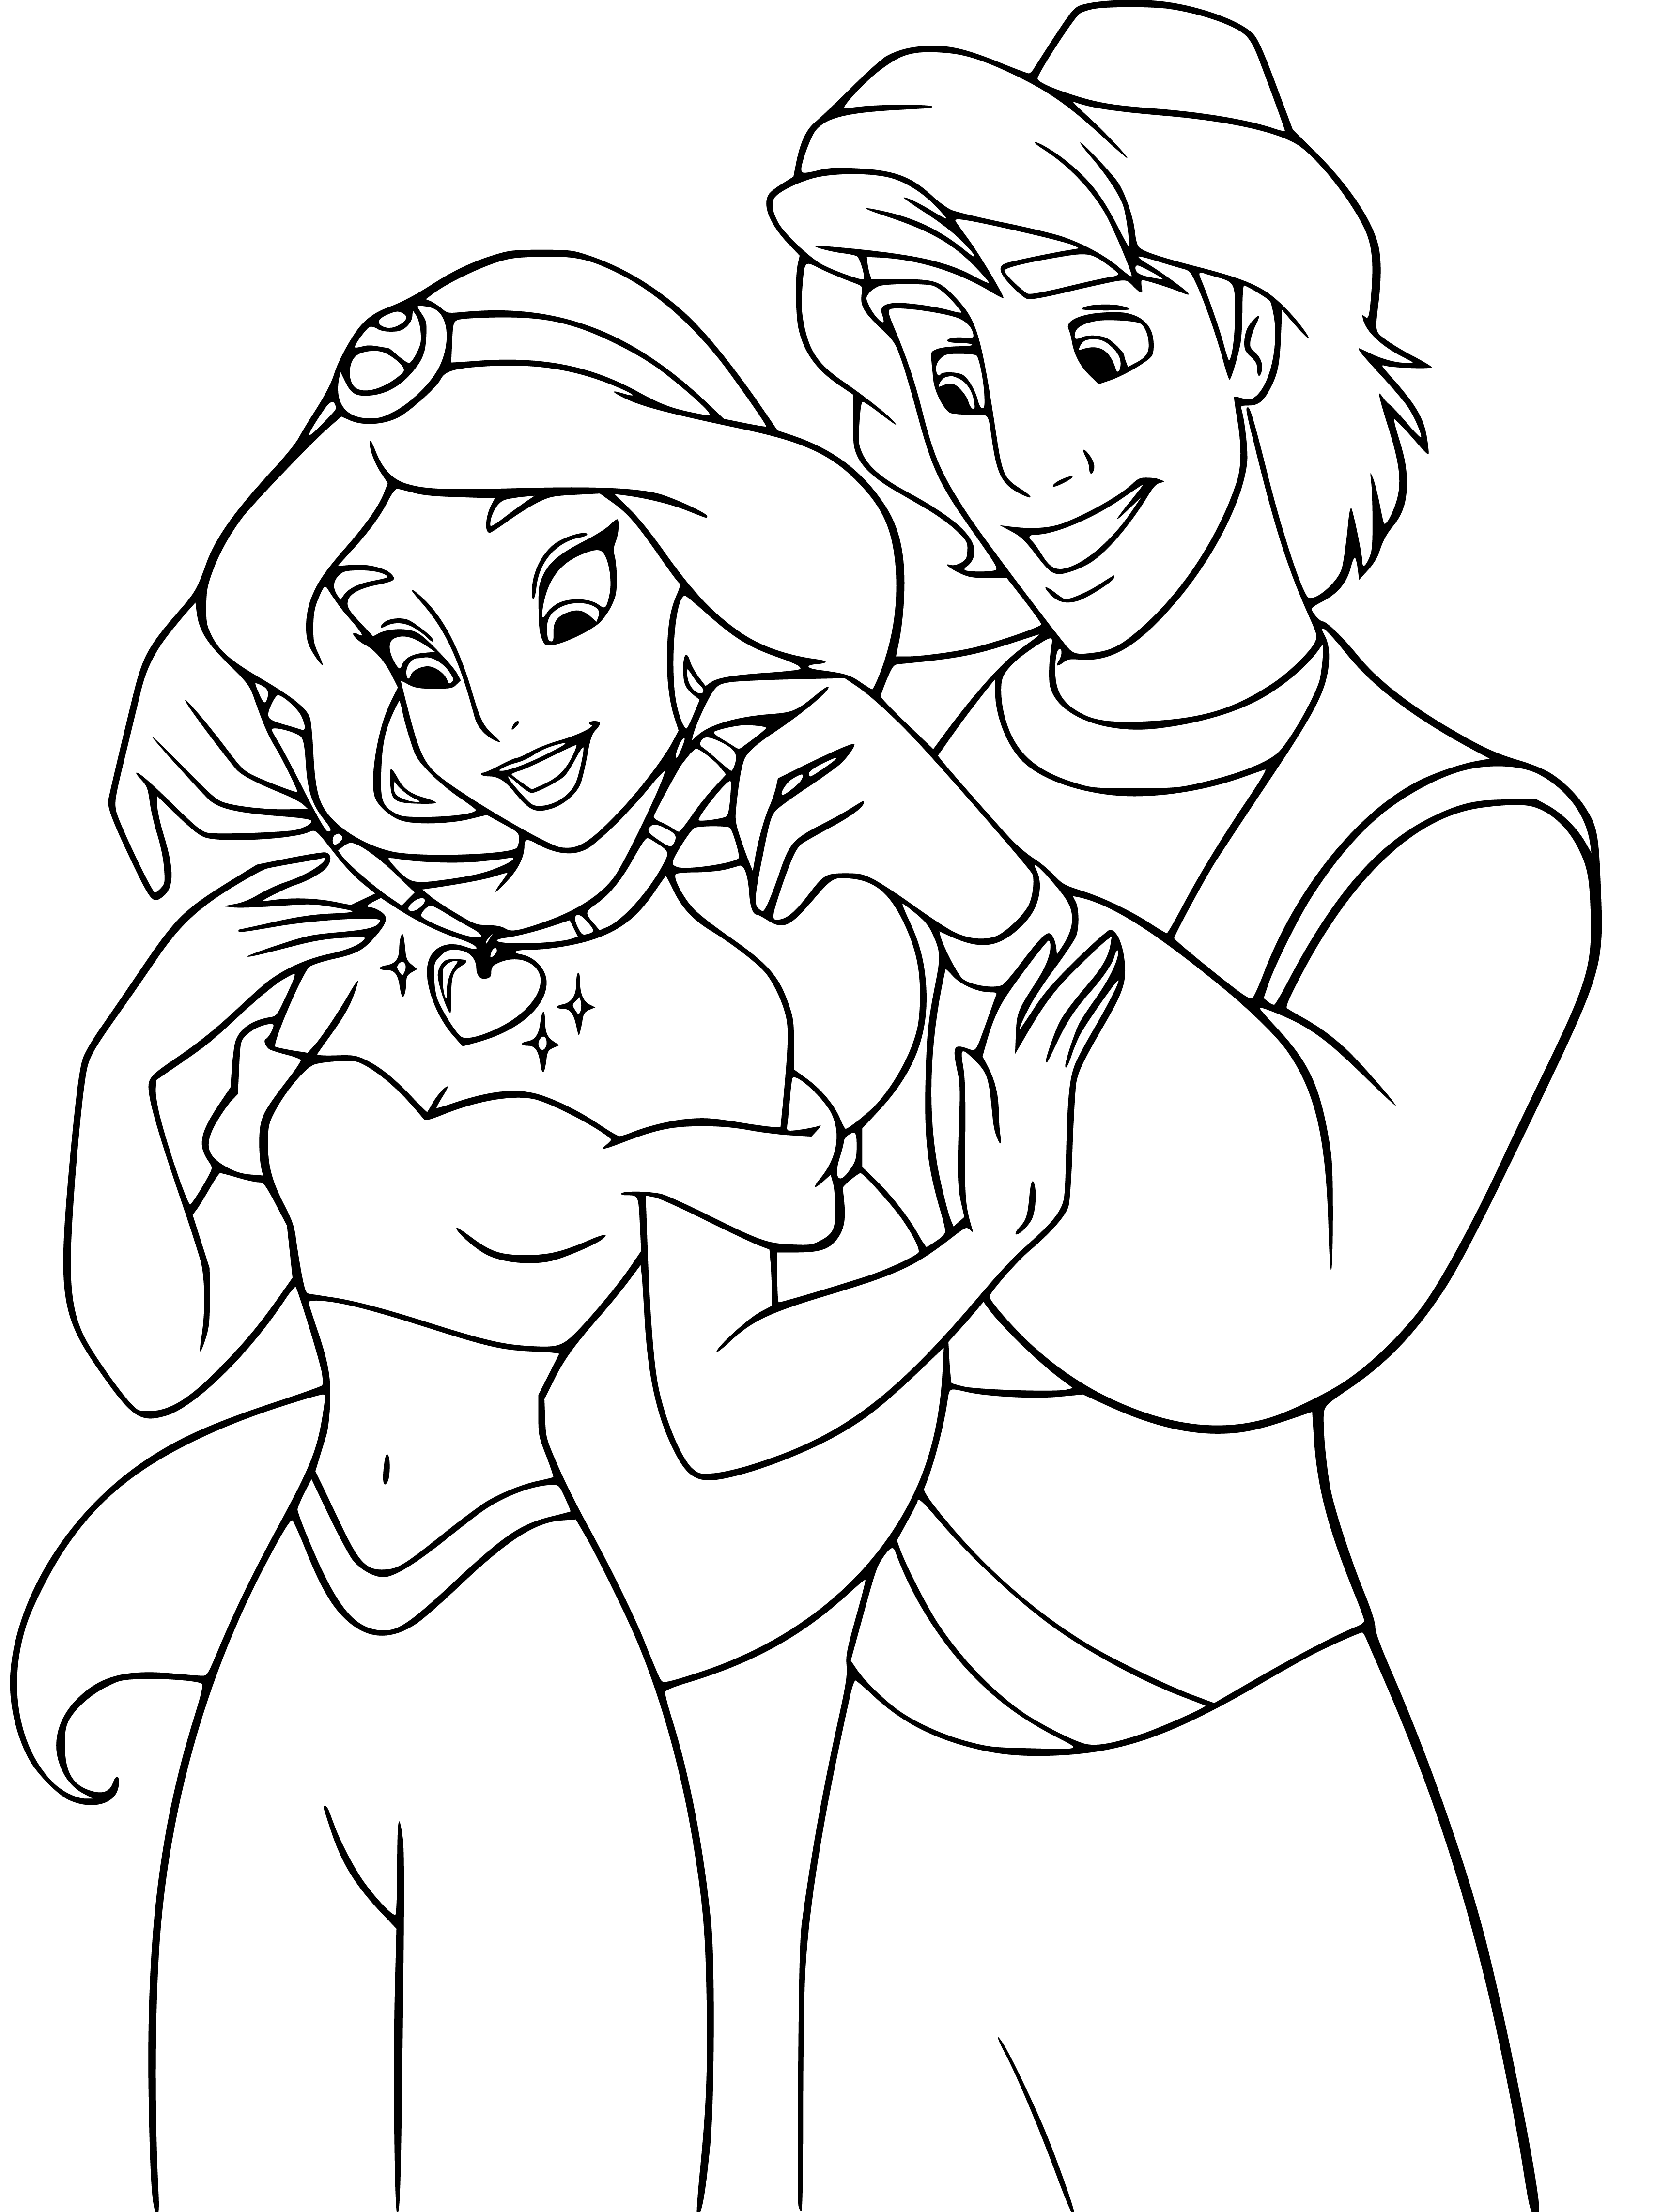 Printable Princess Jasmine and Aladdin Coloring Page for kids.